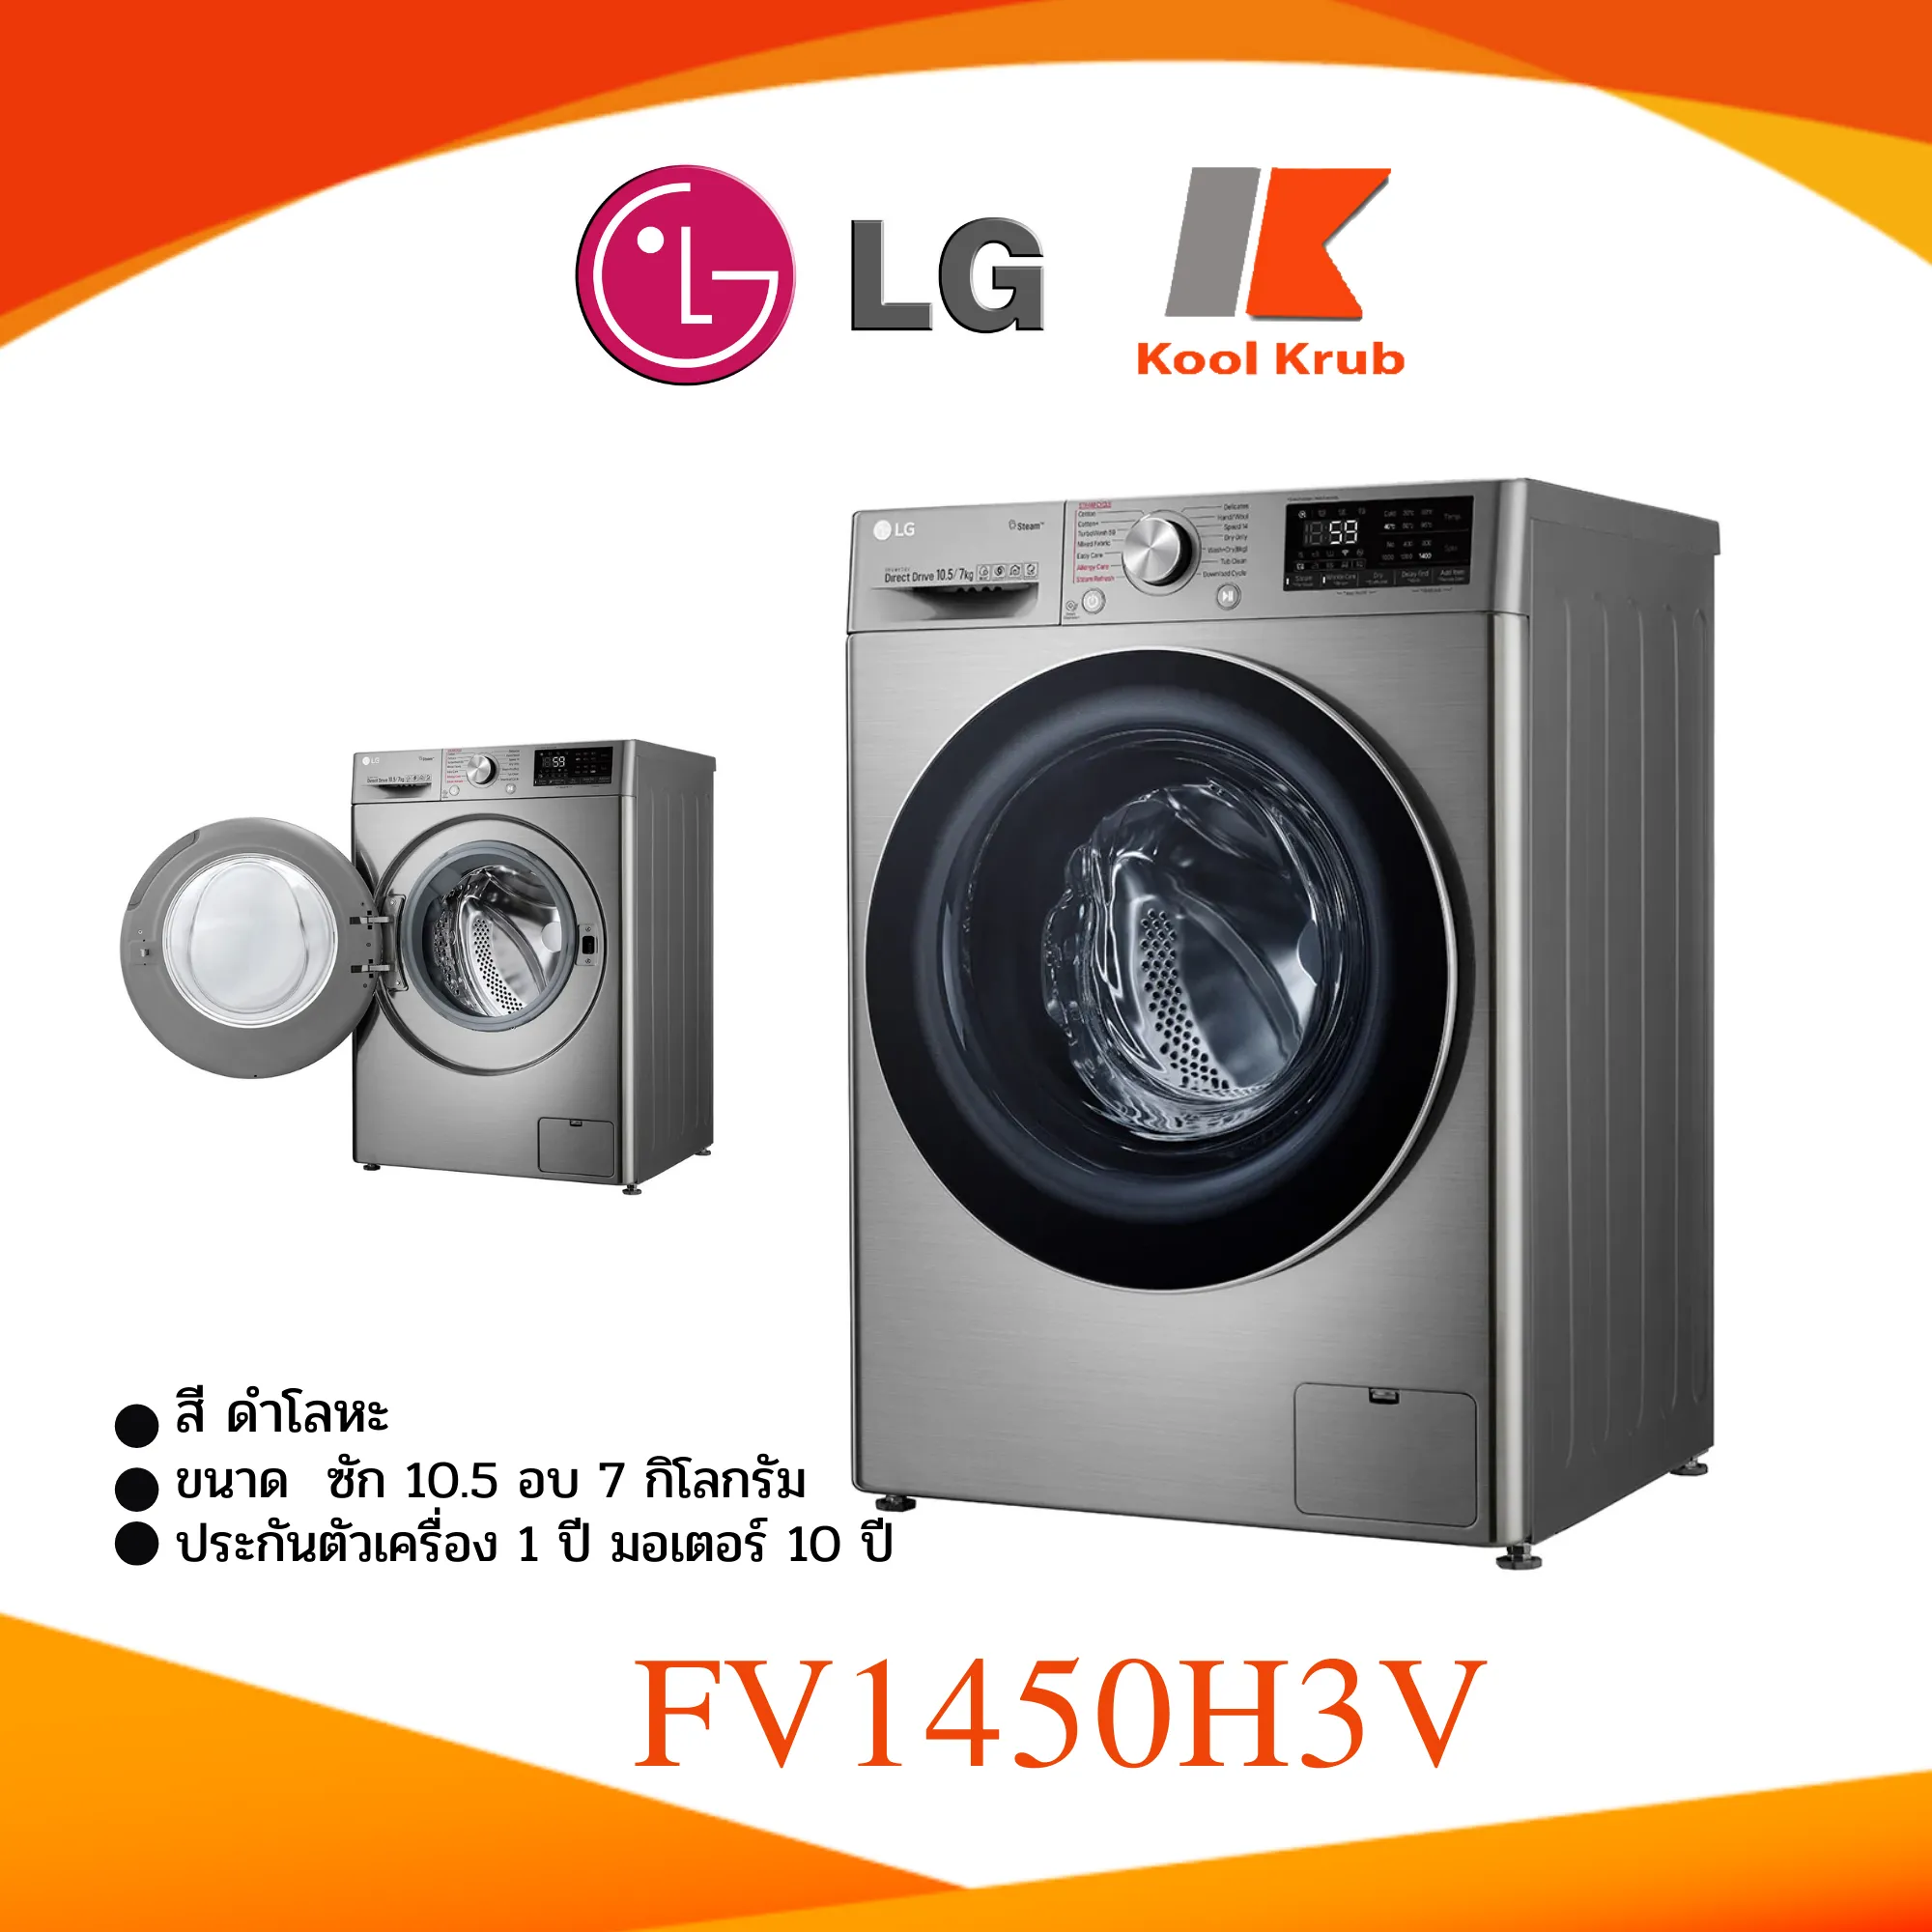 LG  เครื่องซักผ้า+อบผ้า รุ่น FV1450H3V ความจุ 10.5 / 7 กก. 1450H3V 💥แถมฟรีขาตั้งและผ้าคลุม💥